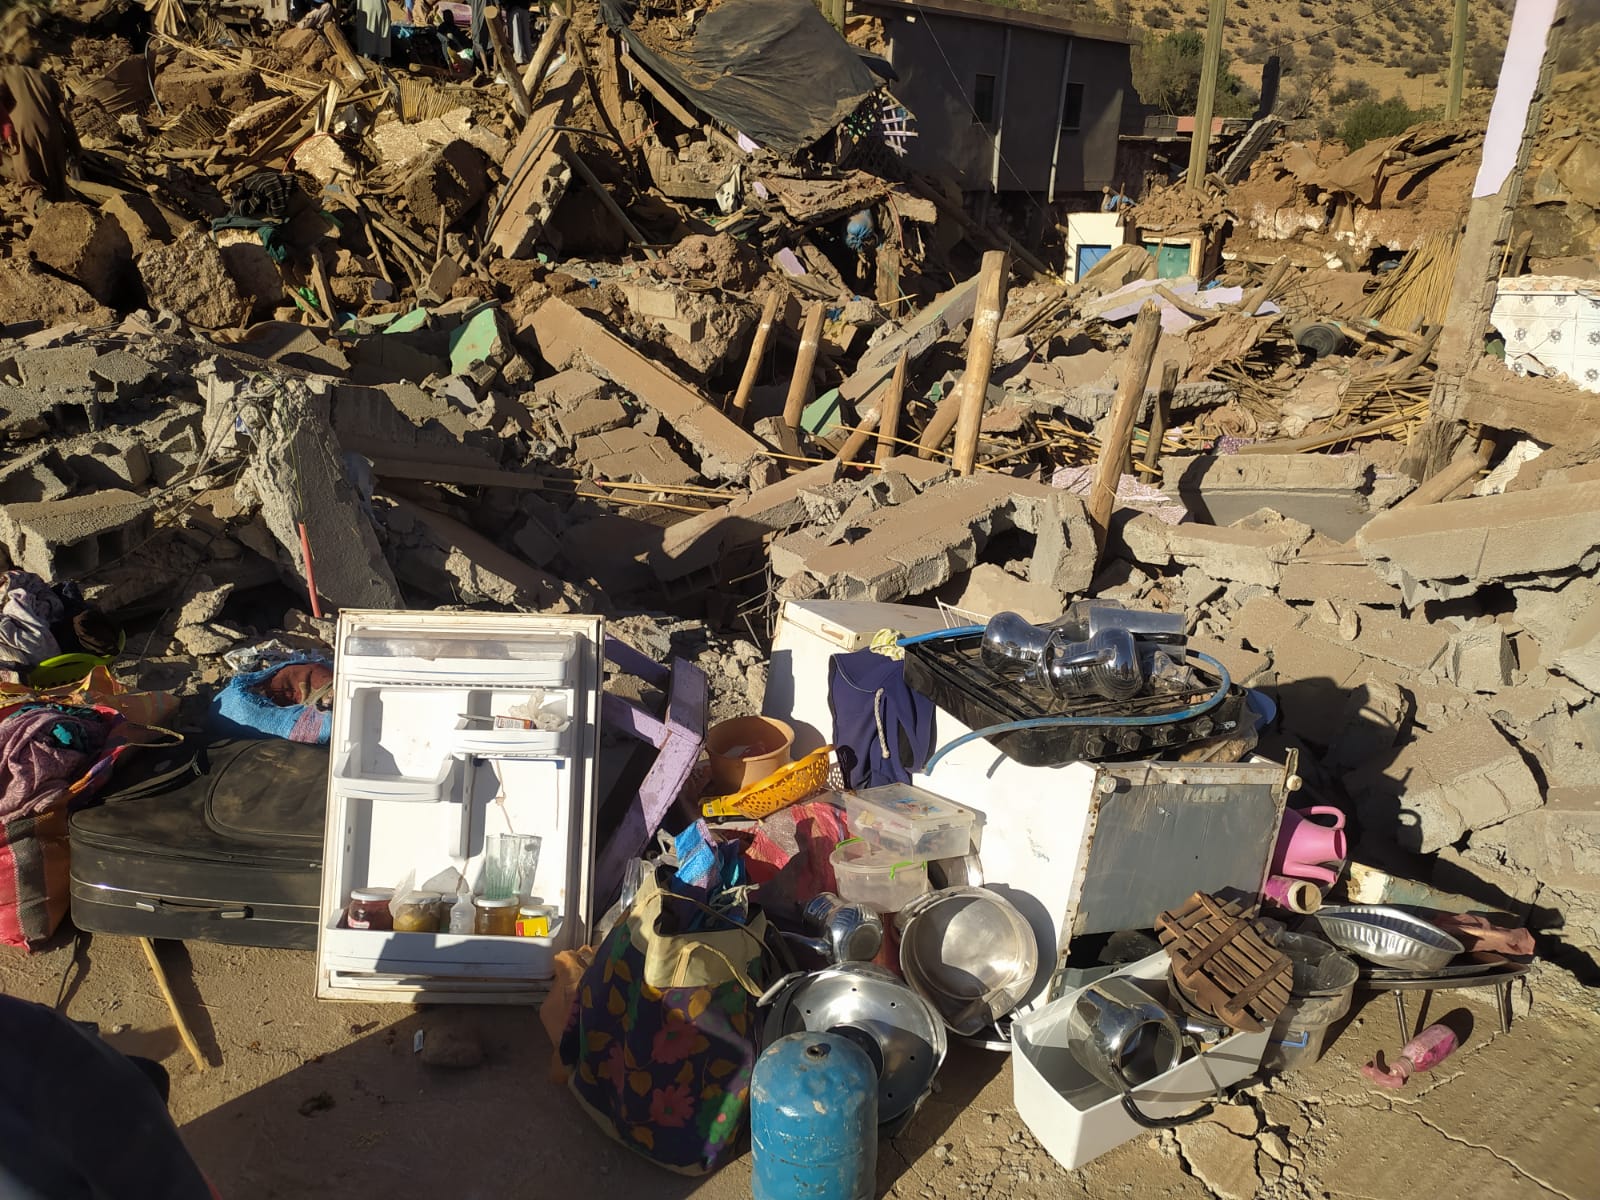 Güter des täglichen Gebrauchs sind zerstört oder verschüttet. Foto: Abdellah Elbouzidi